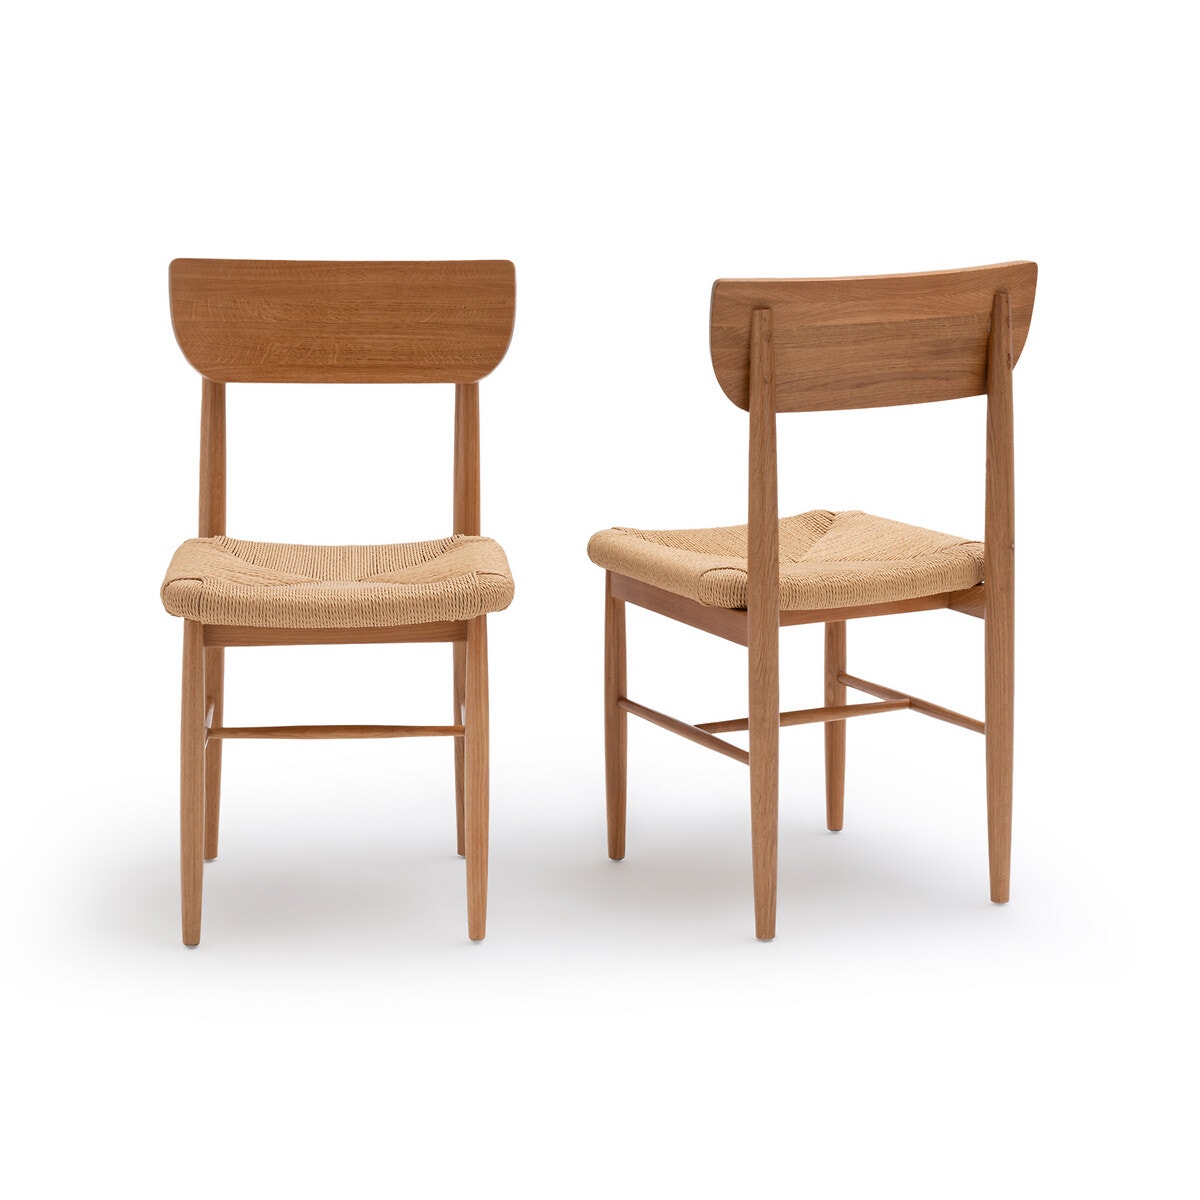 Σετ 2 καρέκλες από μασίφ ξύλο δρυ και πλεγμένο σχοινί, Andre